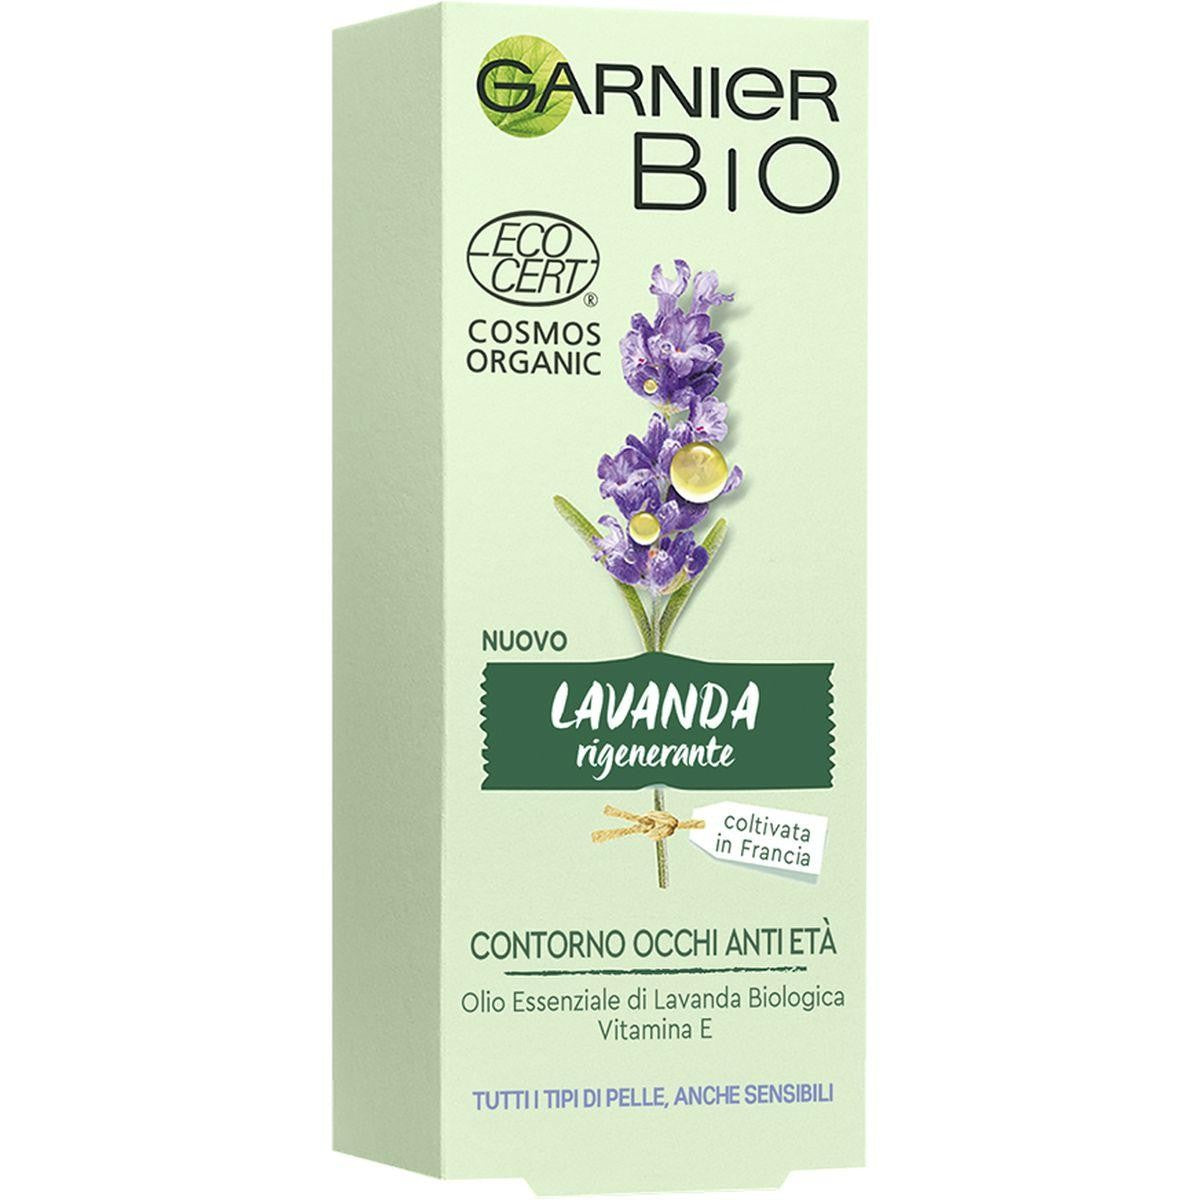 Garnier Bio Crema Controrno Occhi Lavanda Rigenerante, 15 ml - Jasmine Parfums- [ean]